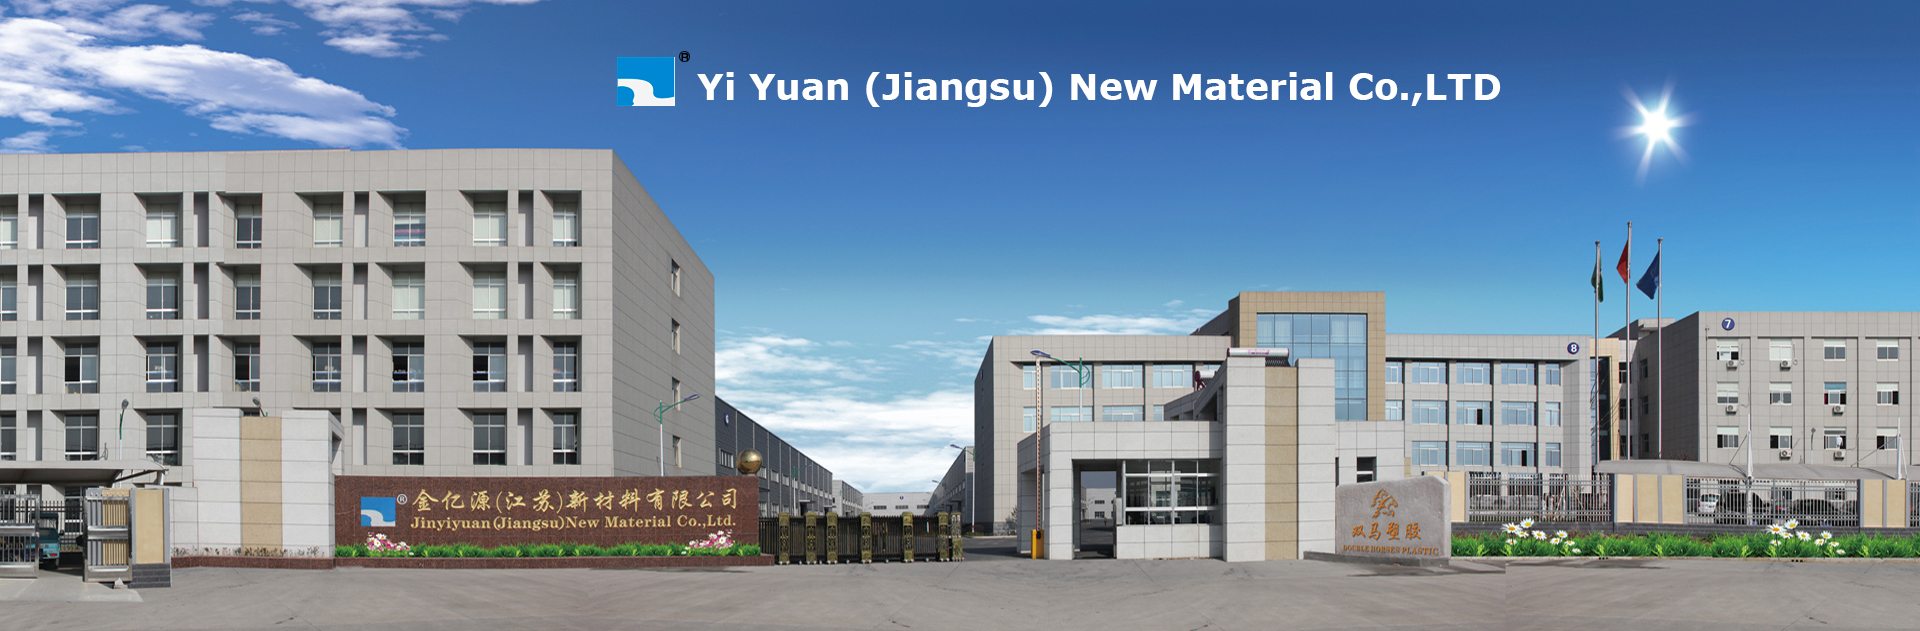 Jin Yiyuan (Jiangsu) new materials Co., Ltd.